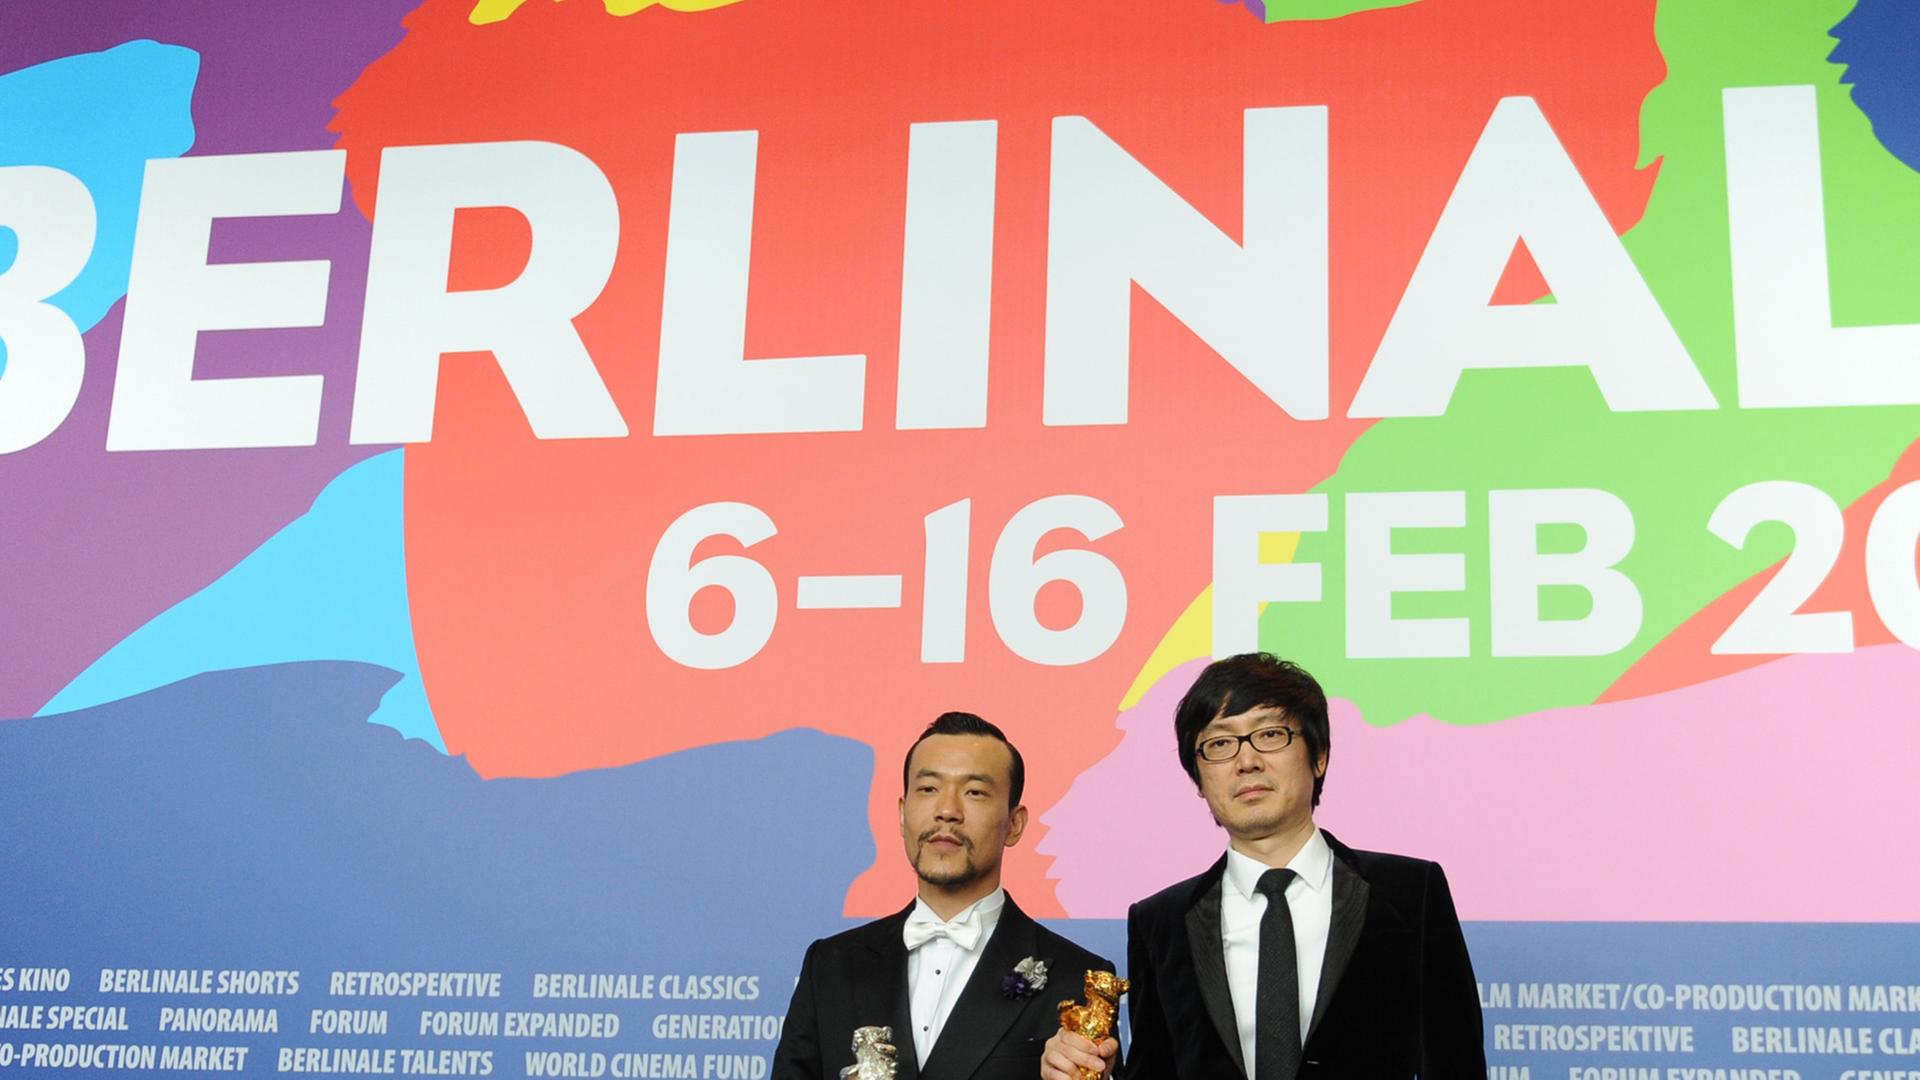 Der chinesische Schaupieler Liao Fan (l.) und Regisseur Diao Yinan posieren am 15.02.2014 in Berlin auf der Pressekonferenz der Preisträger während der 64. Internationalen Filmfestspiele. Ihr Film "Bai Ri Yan Huo" (Schwarze Kohle, dünnes Eis) wurde mit dem Goldenen Bären ausgezeichnet, Liao Fan erhielt den Silbenen Bären als bester Darsteller.